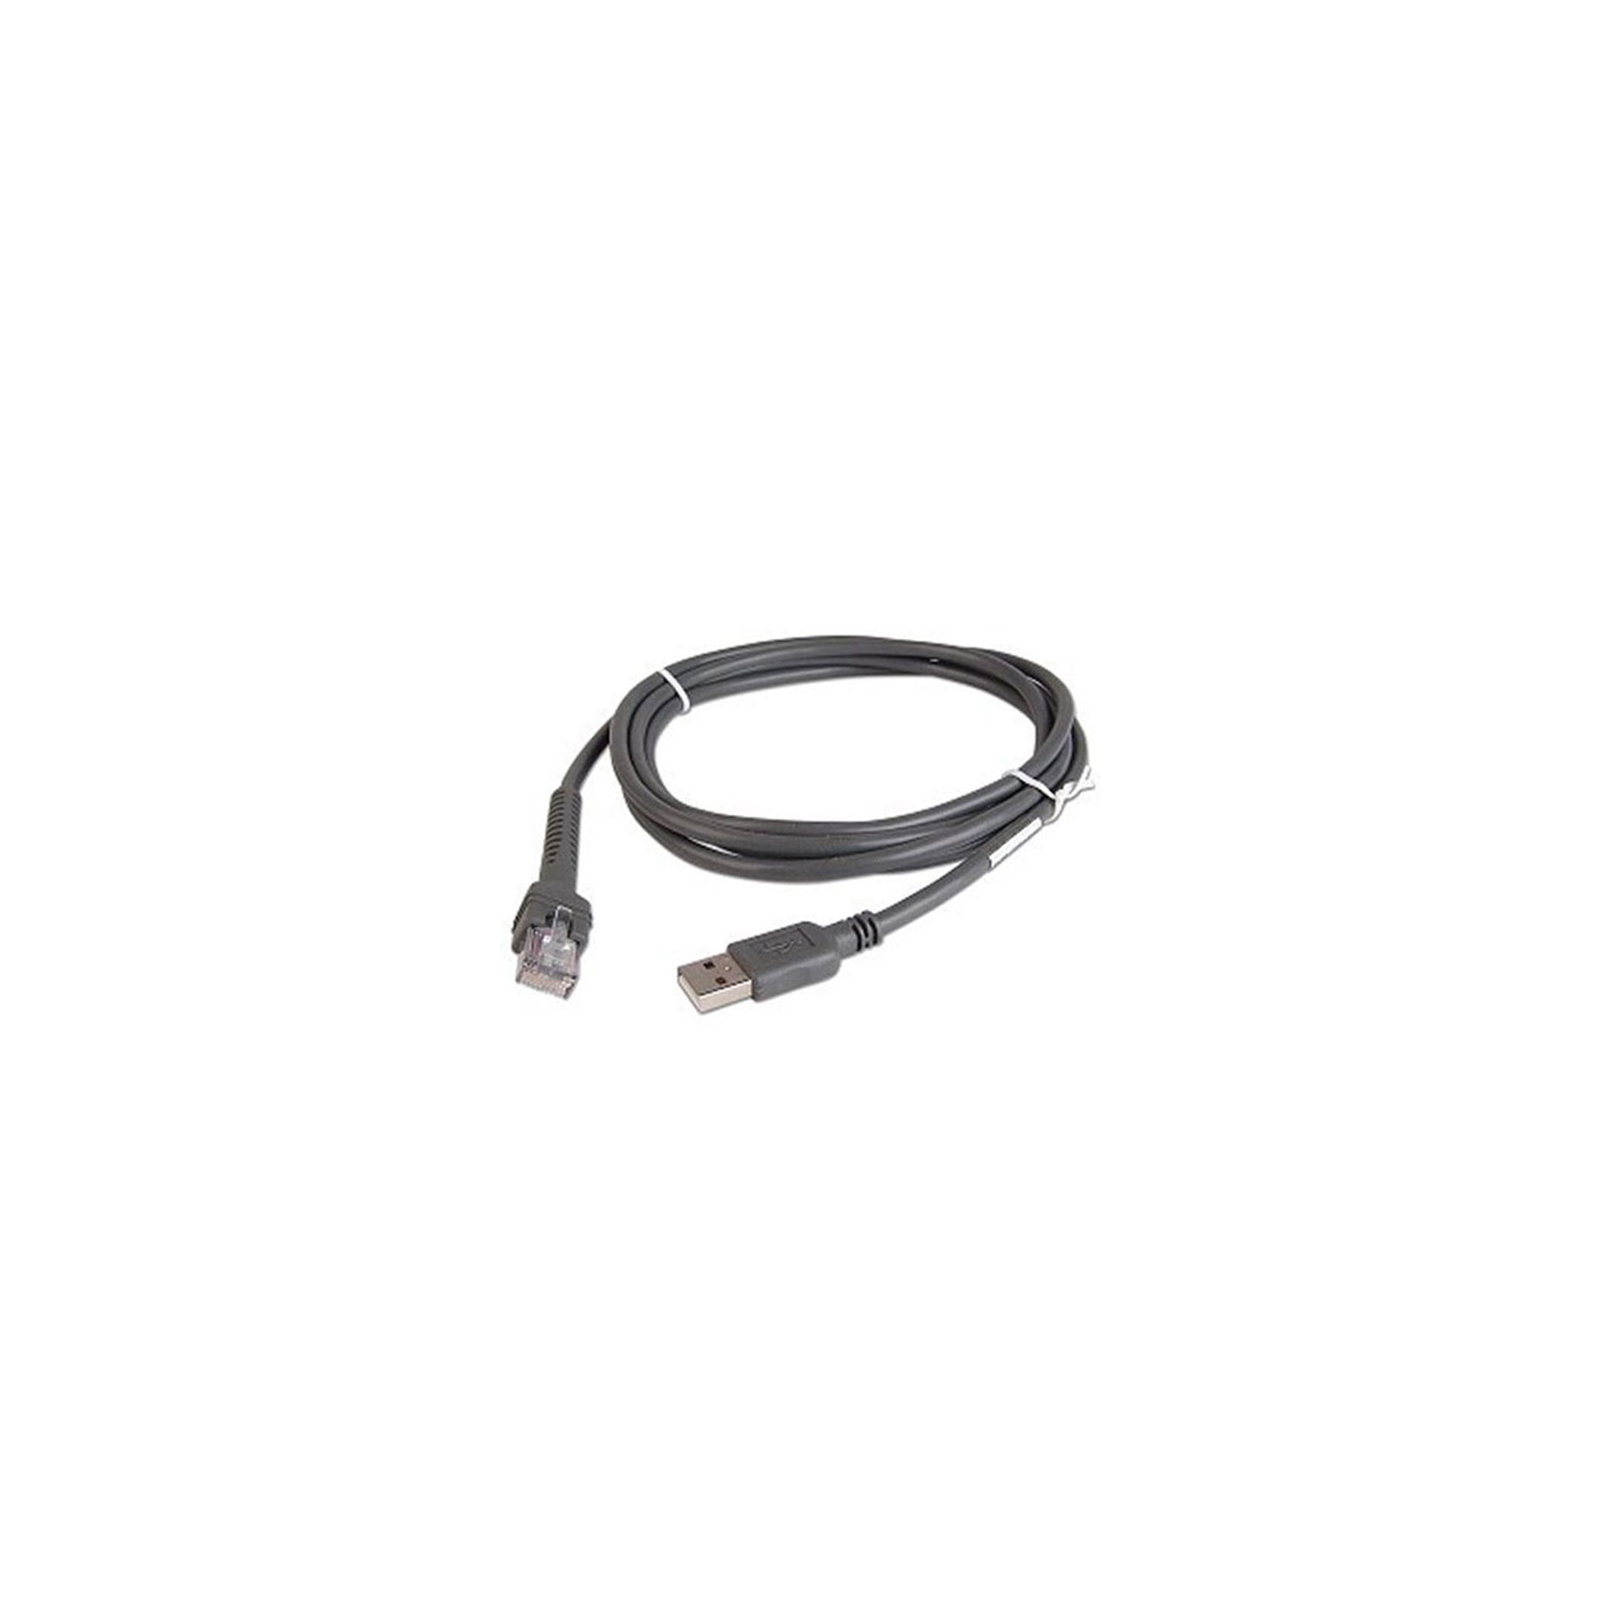 Інтерфейсний кабель Symbol/Zebra USB кабель для сканера штрих-кода (совместимый) (USB кабель для сканера Motorolla)